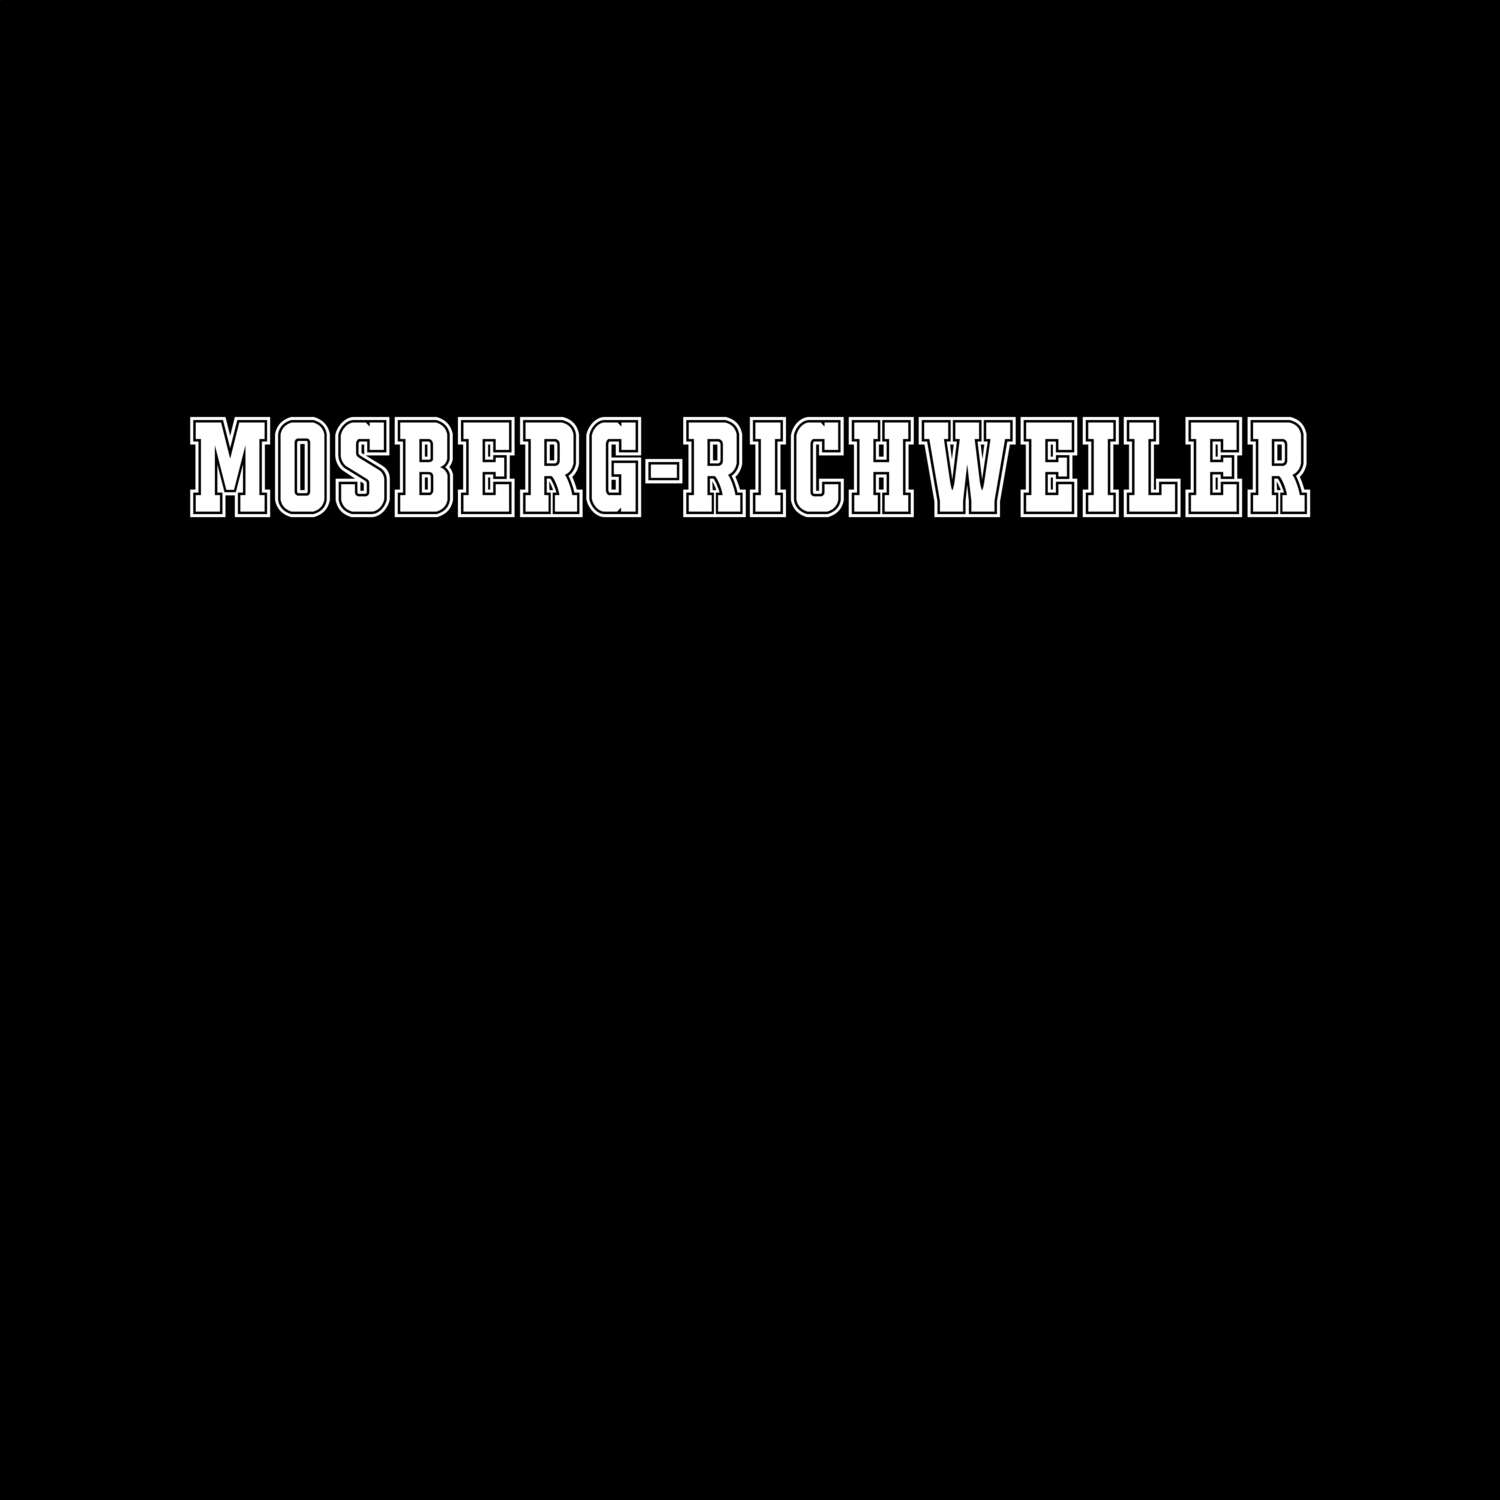 Mosberg-Richweiler T-Shirt »Classic«